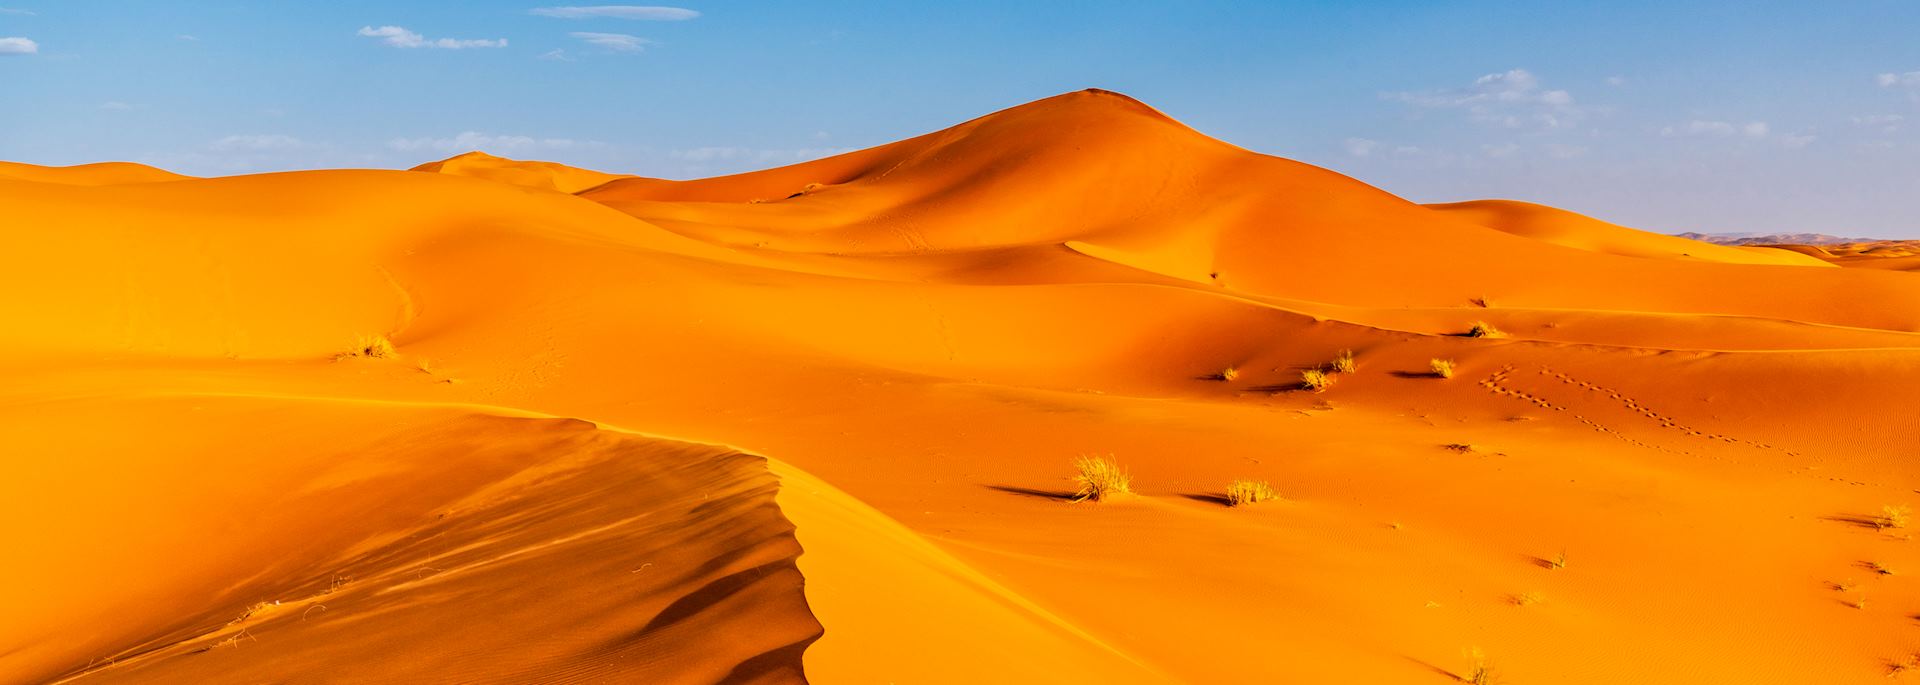 The Erg Chebbi, Sahara Desert